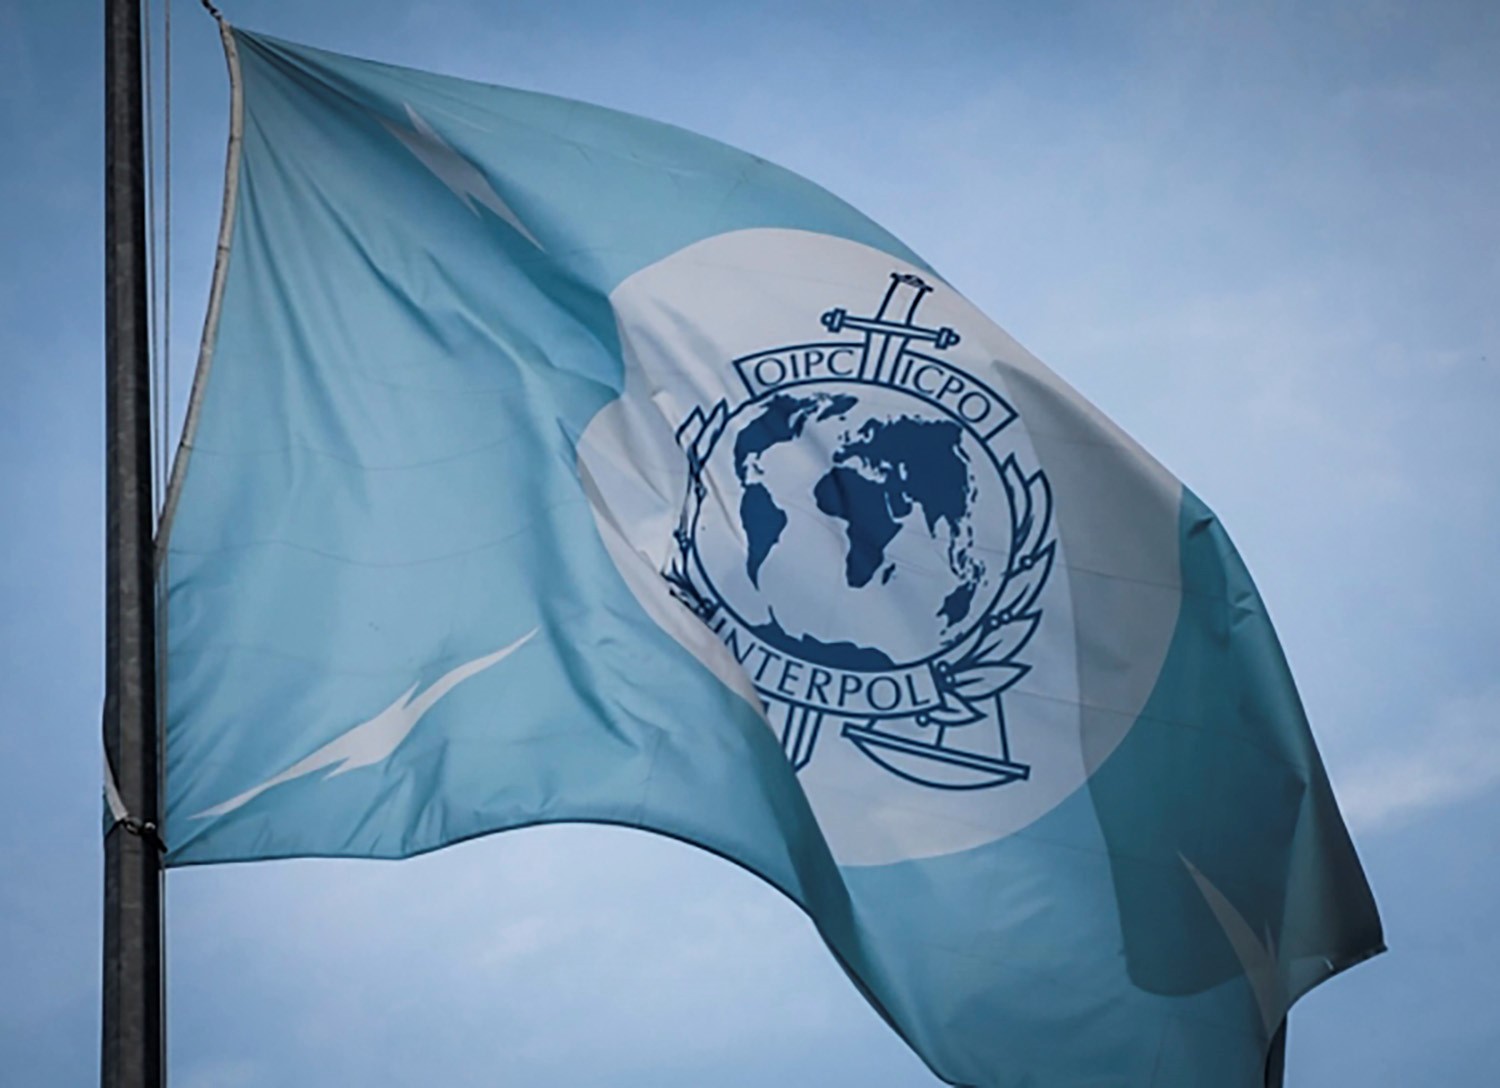 Interpol blå och vit flagga. Den har en ljusblå bakgrund med ett emblem i mitten och fyra blixtar som symboliserar telekommunikation och snabbhet i polisarbetet.